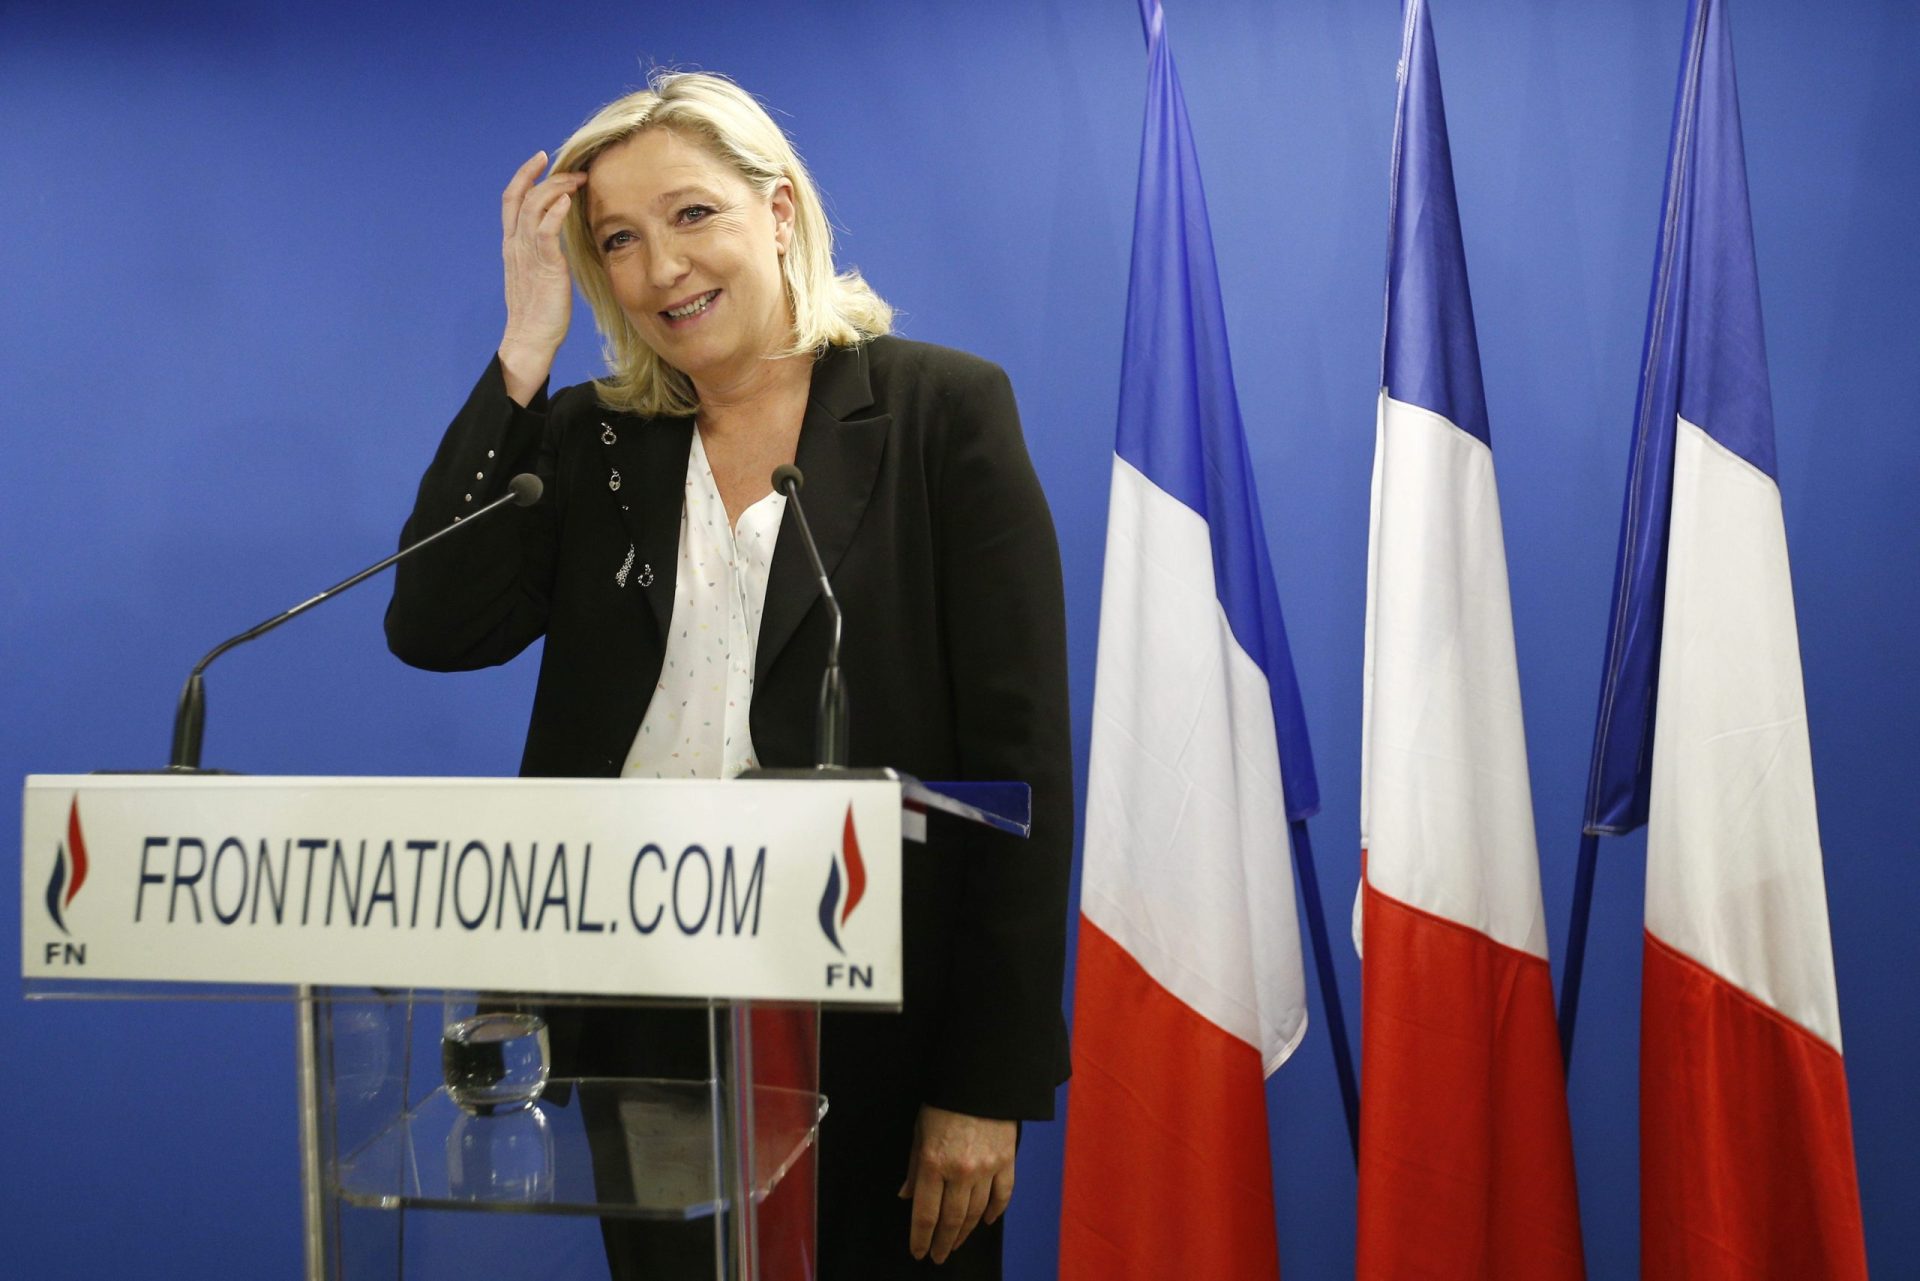 Eleições em França: partido de Le Pen perde em todas as regiões